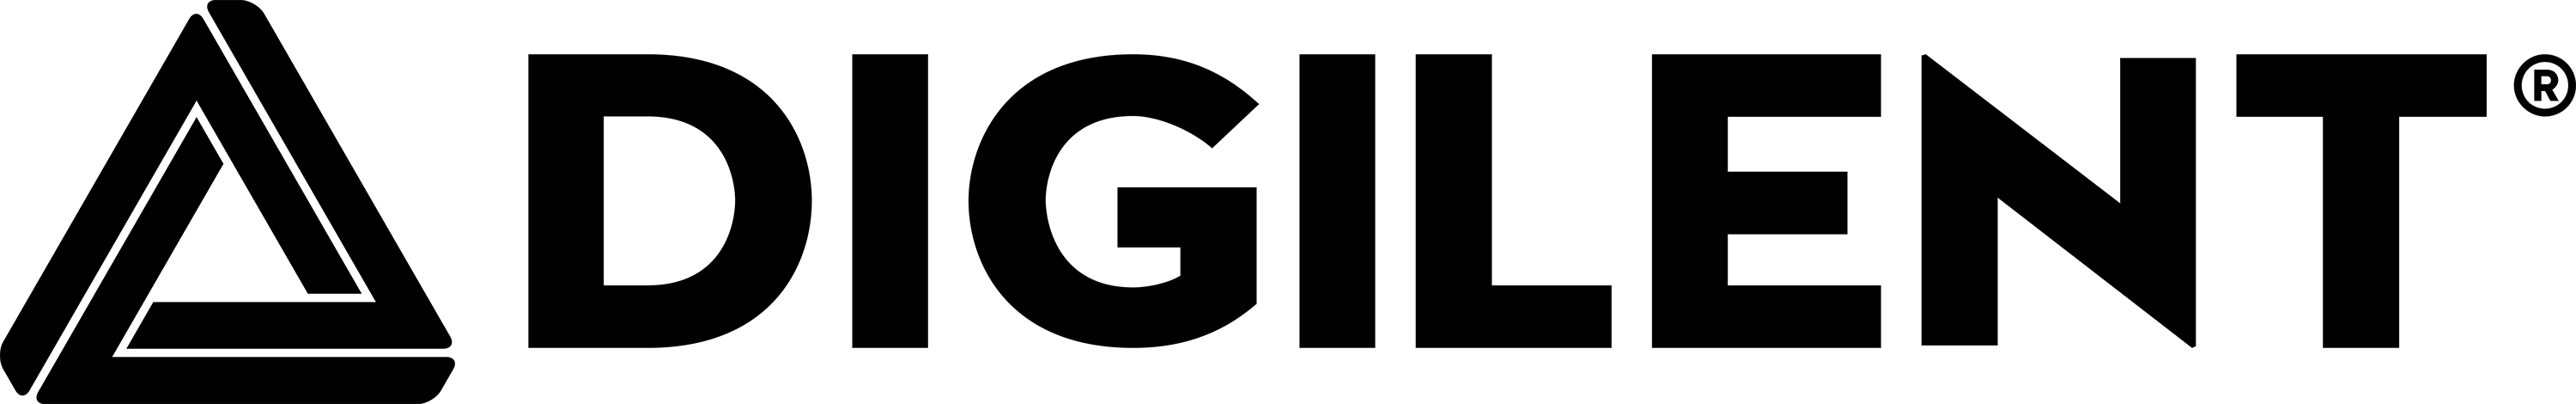 digilent-logo-black-3000.png